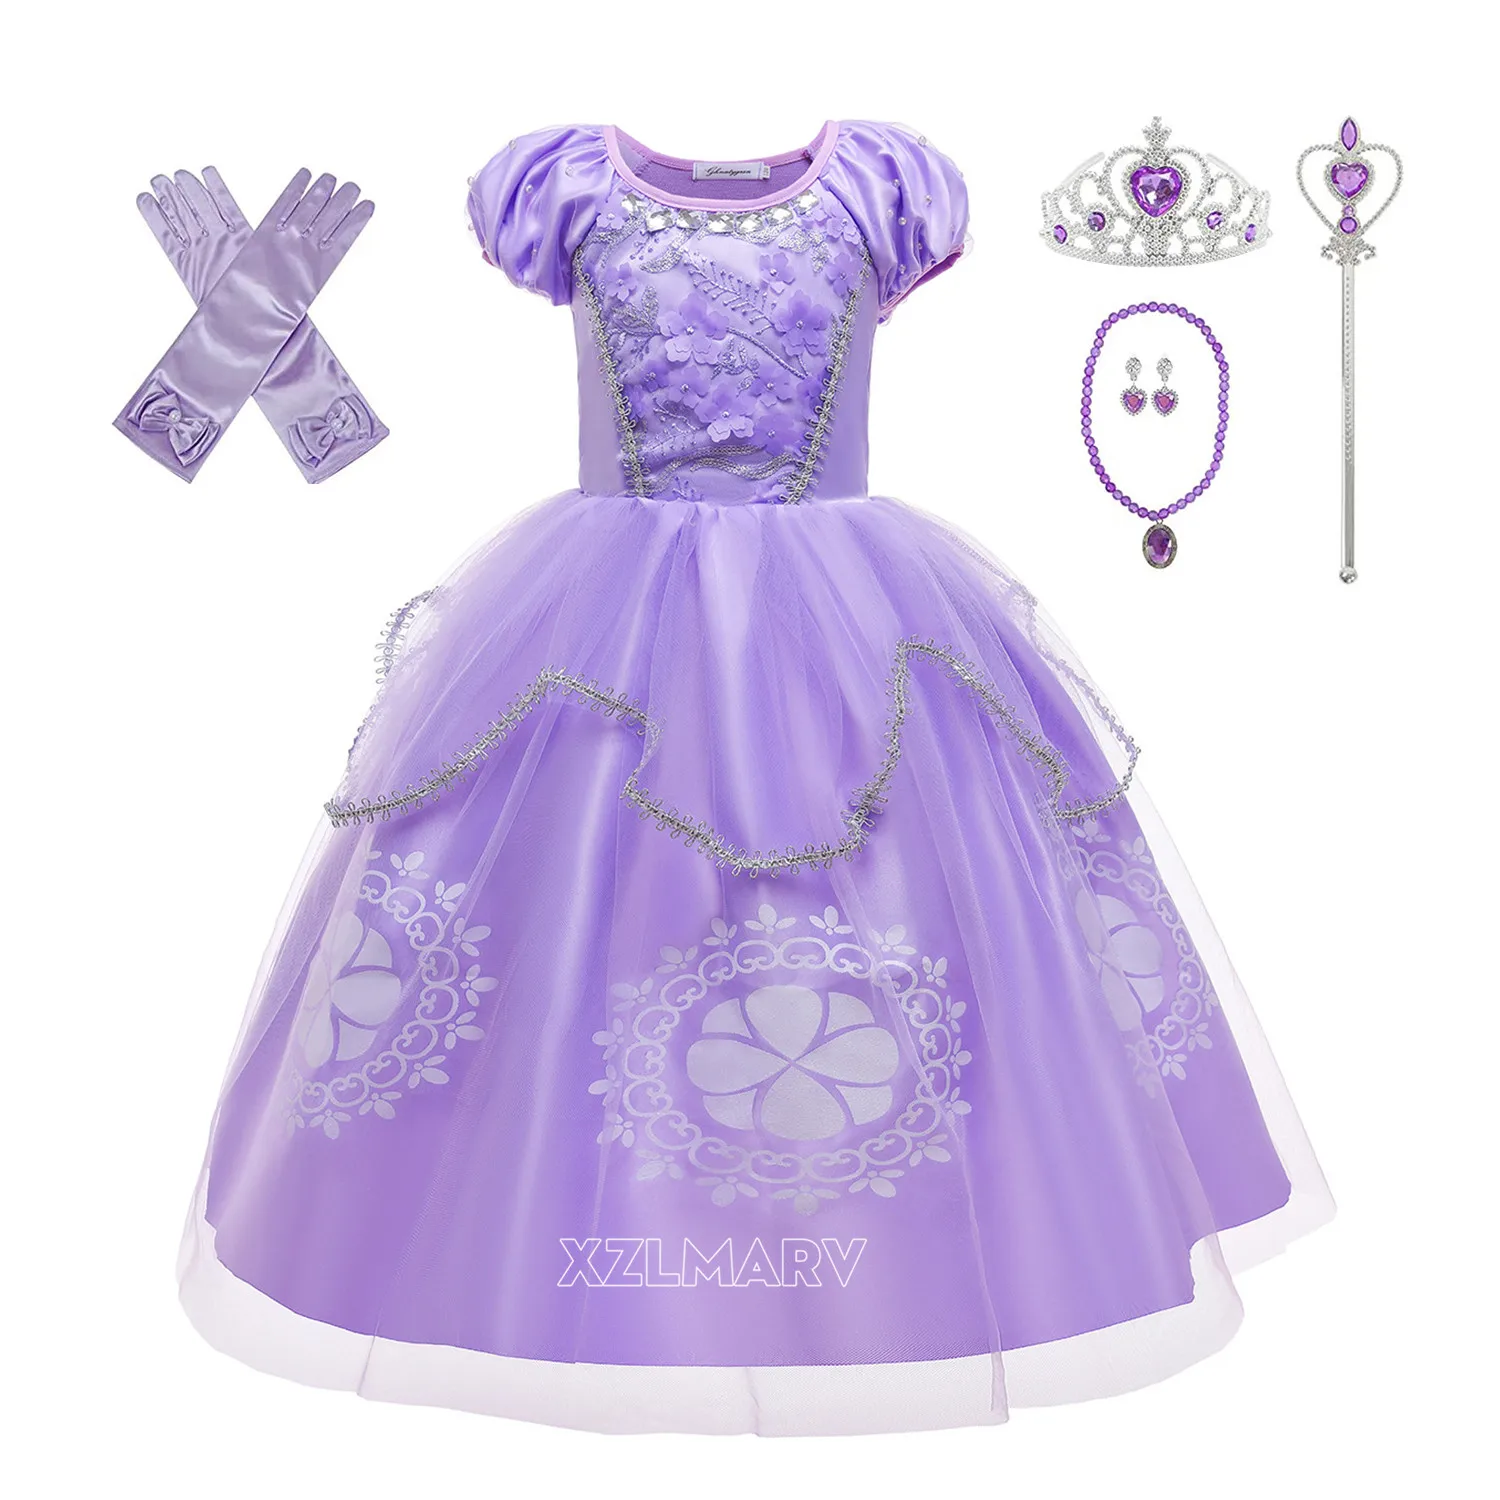 

Фиолетовое платье принцессы Софии для девочек, Детский костюм для косплея, многослойные платья с пышными рукавами, детвечерние праздничные...